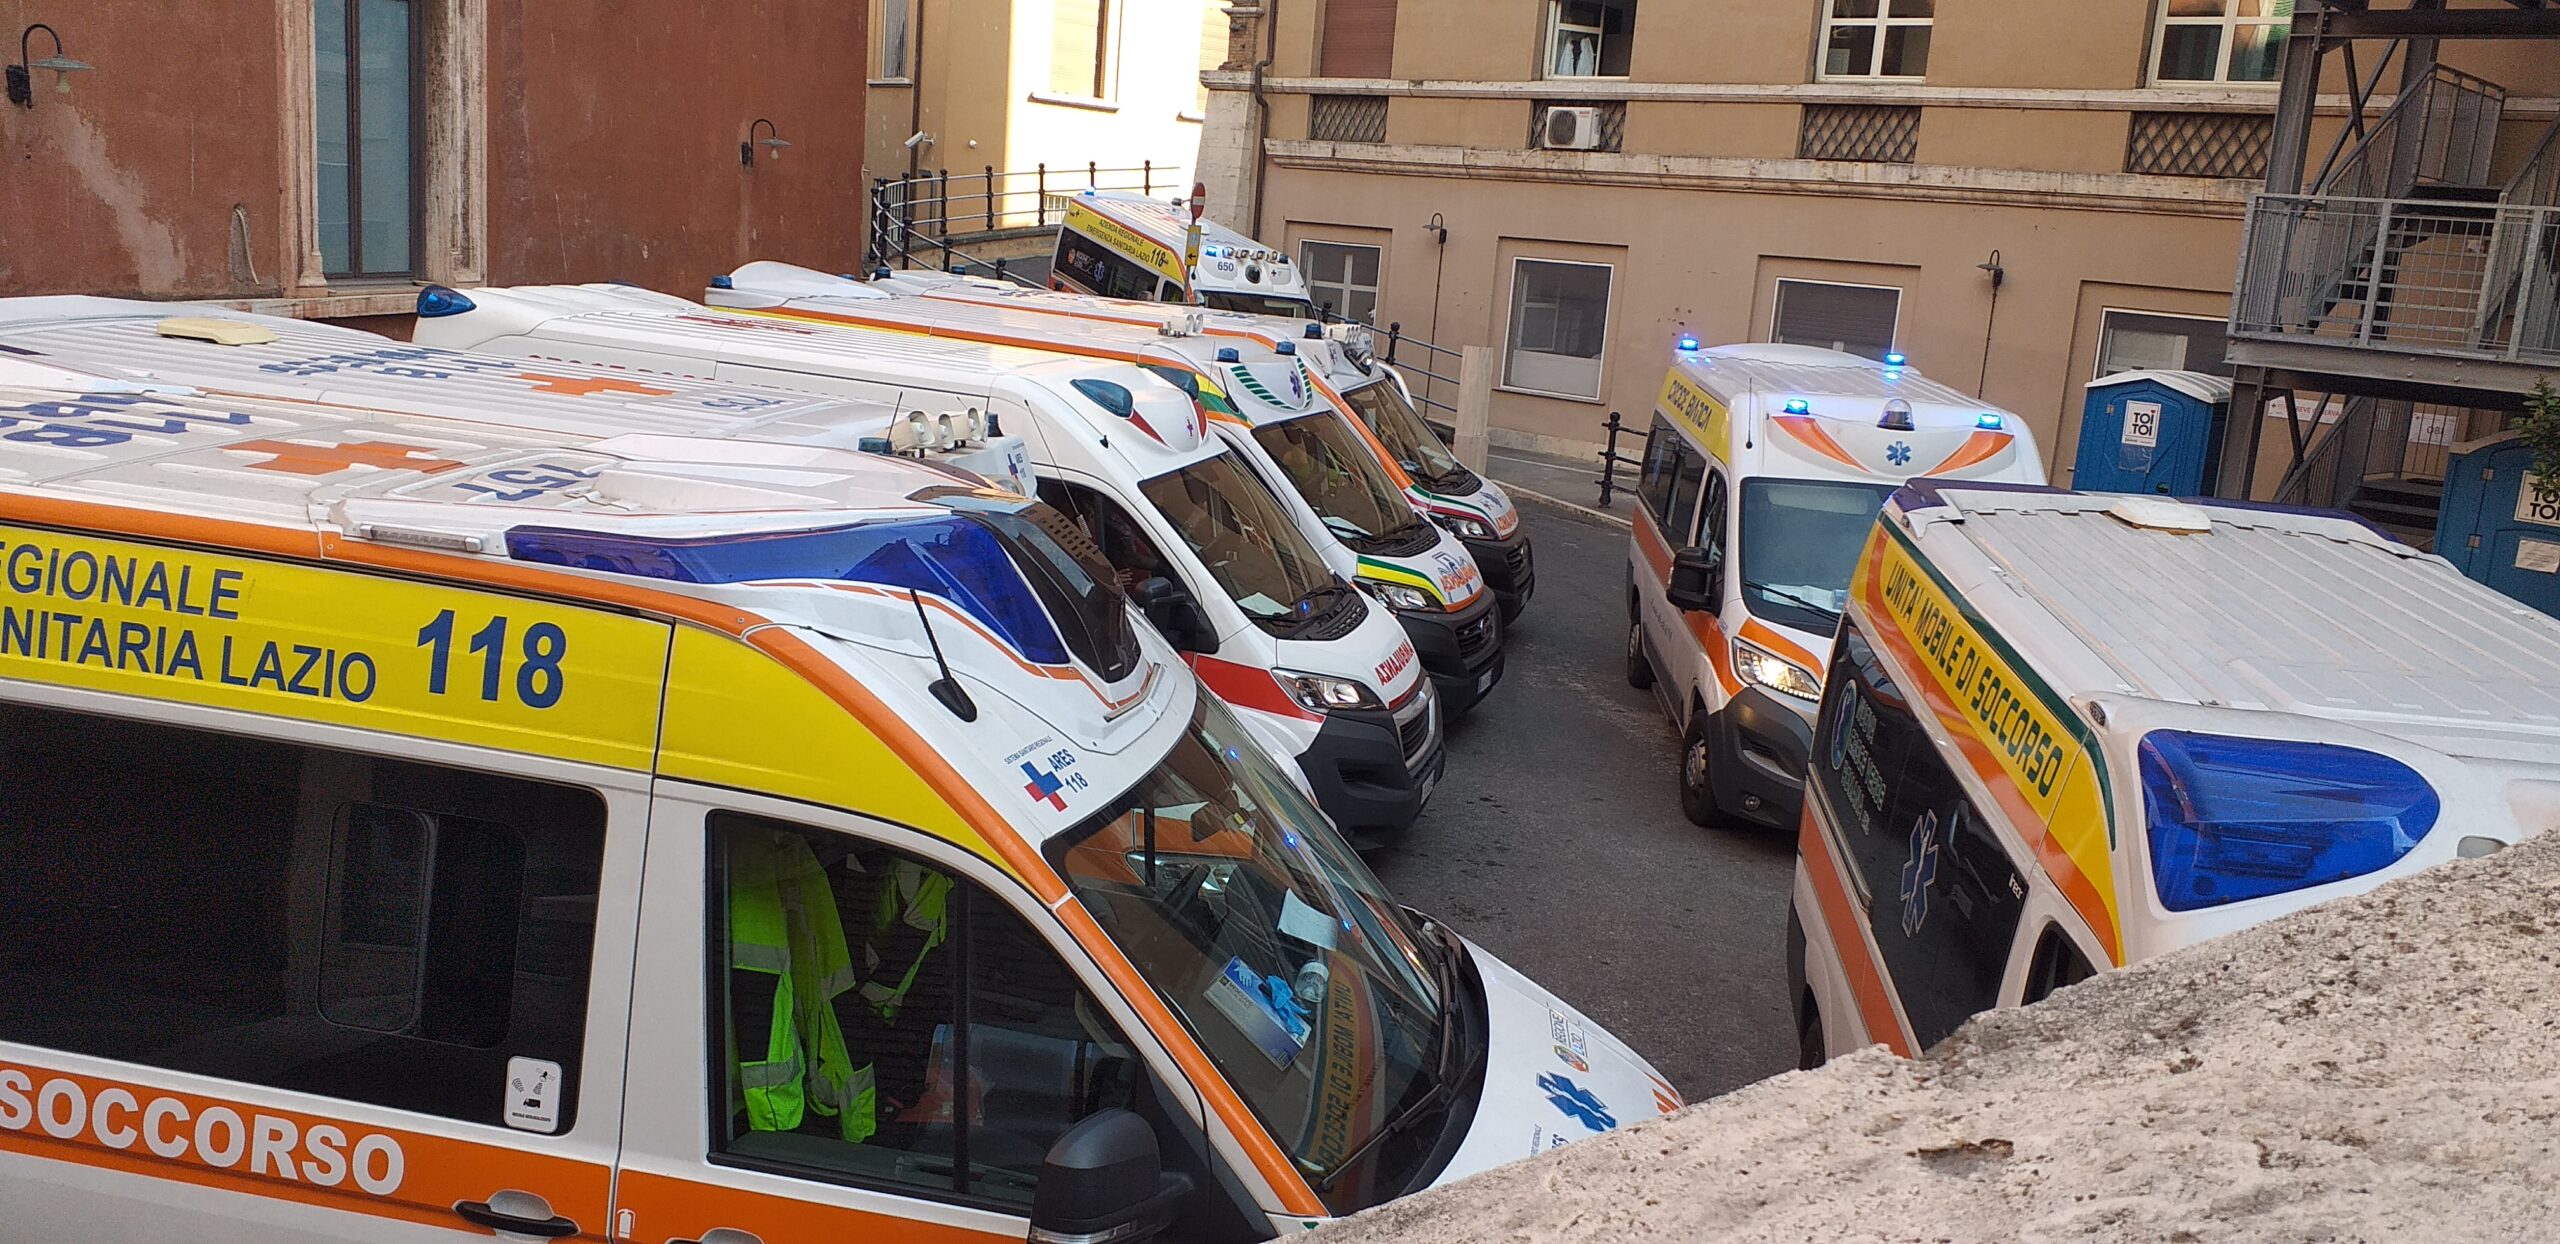 Aou Siena, 13 minuti tempo medio di permanenza ambulanze in Pronto soccorso  - Toscana Notizie